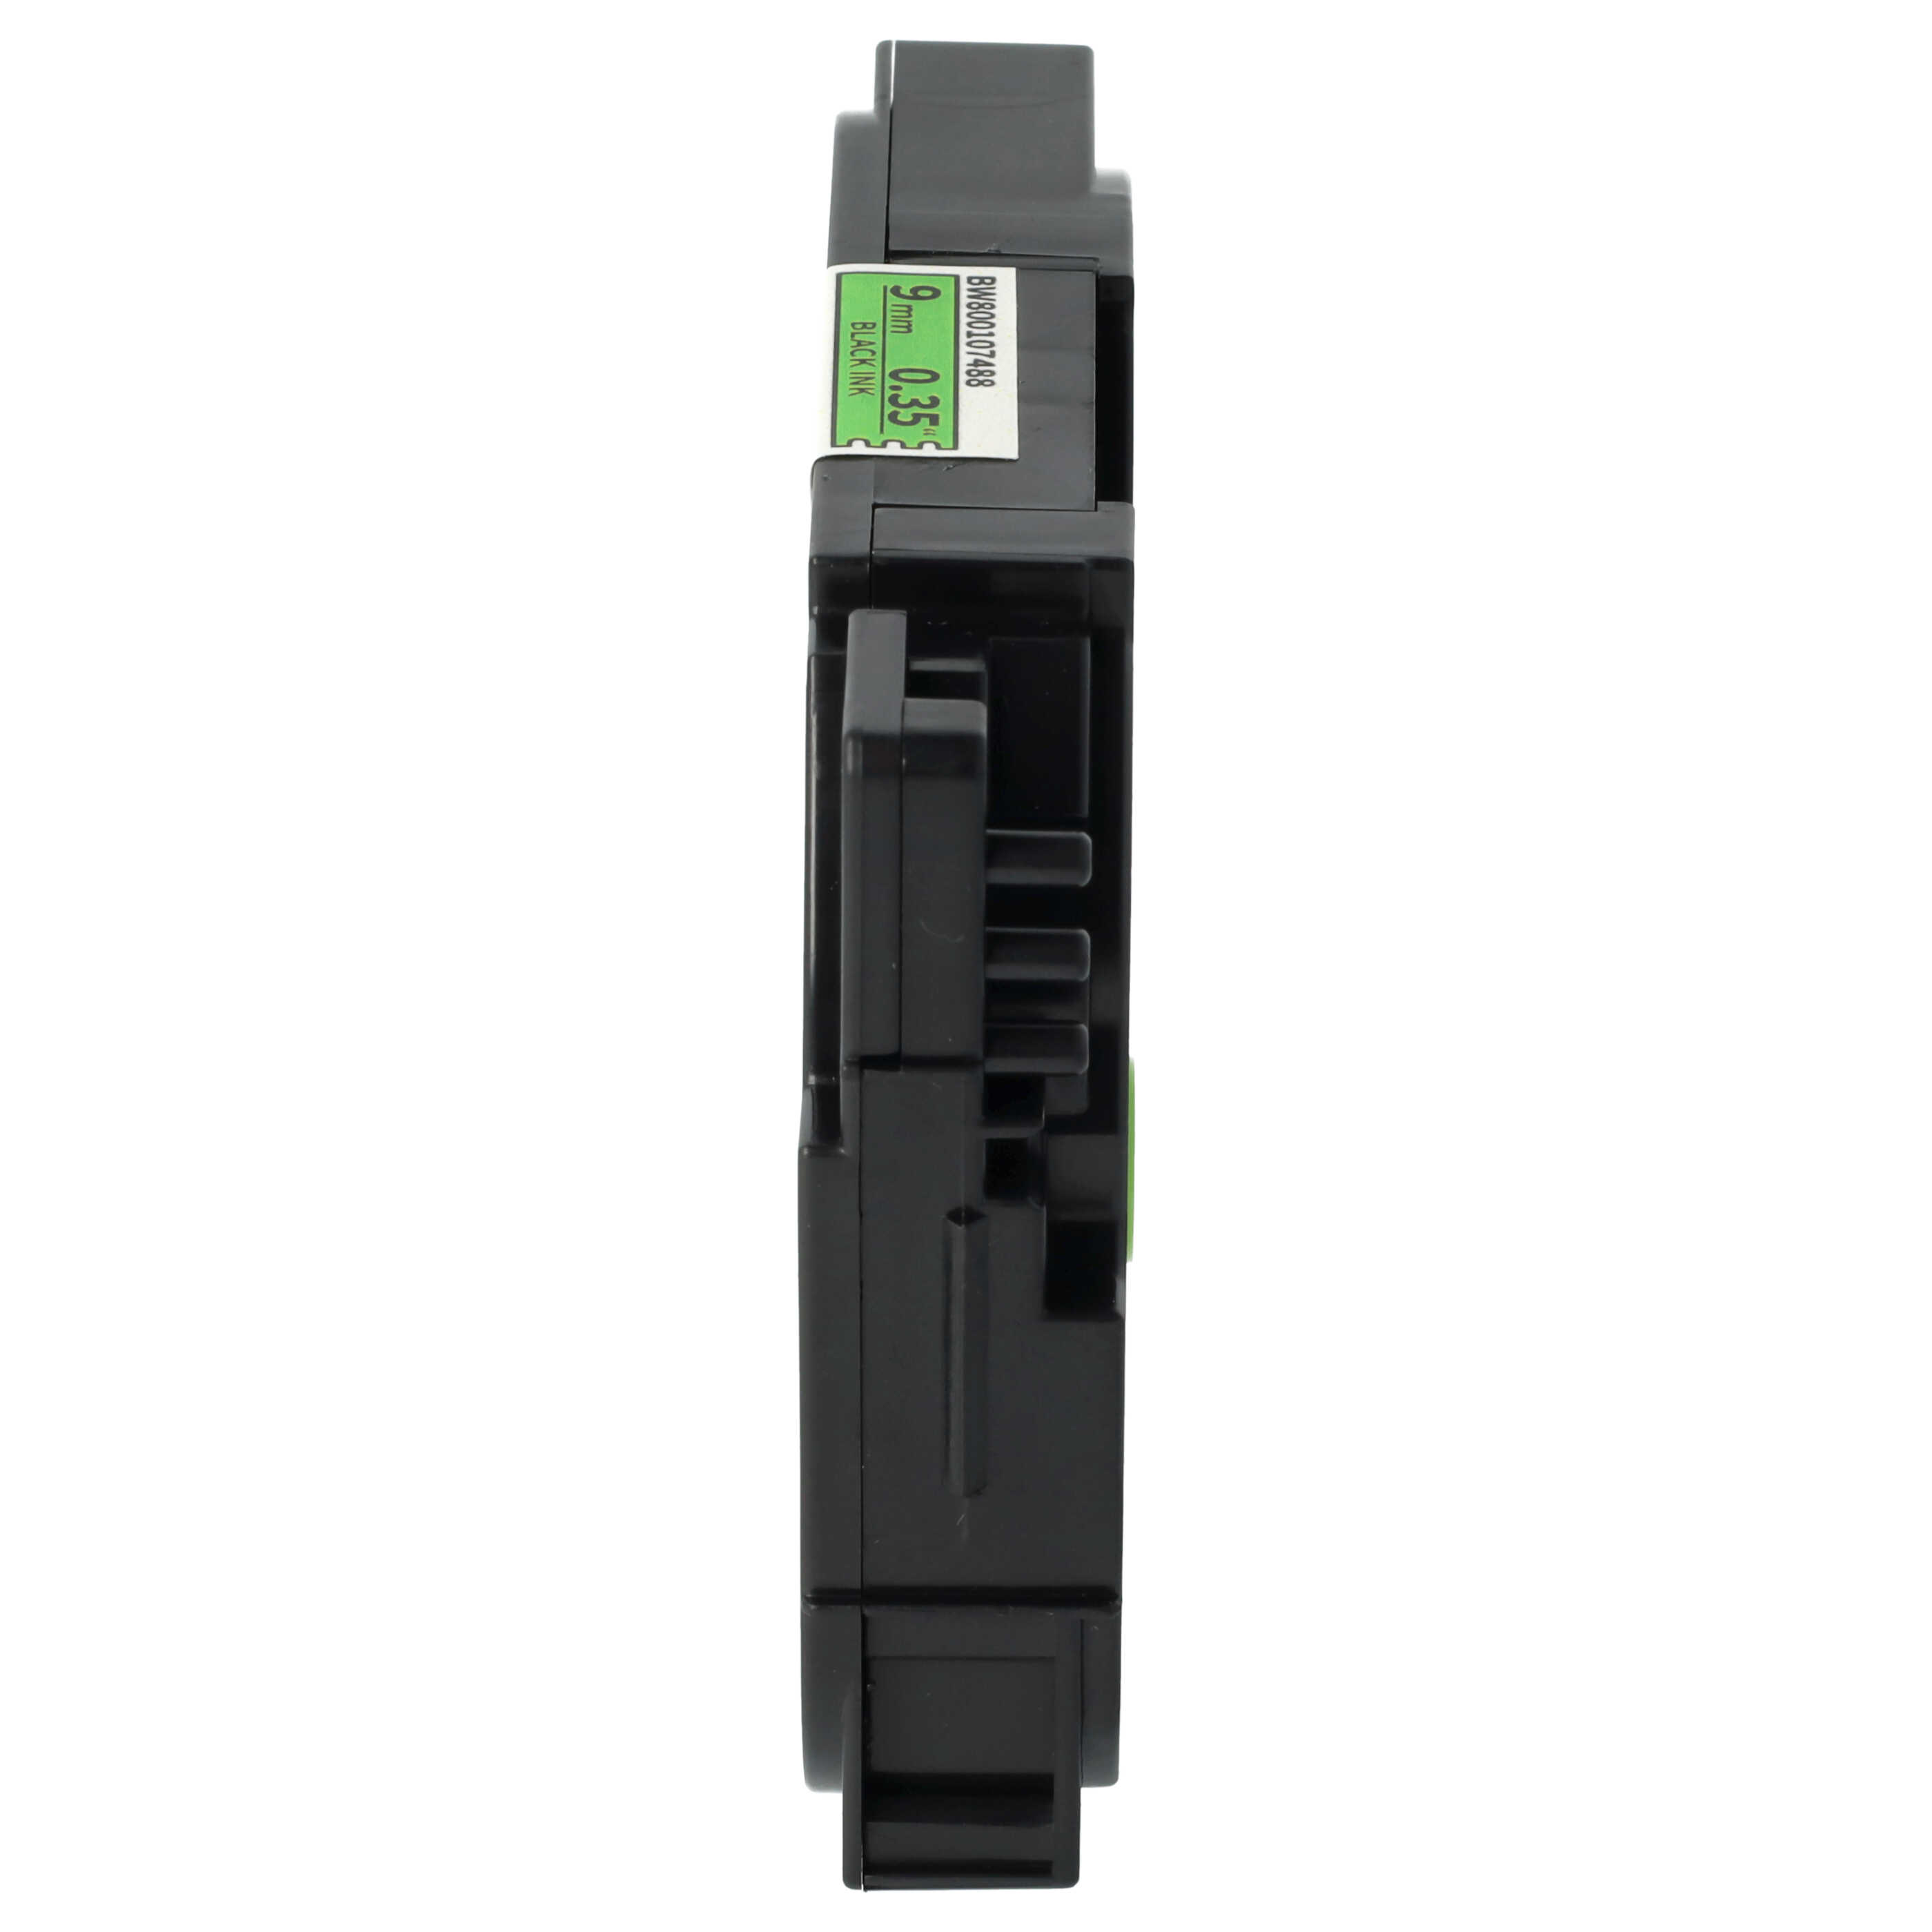 Cassette à ruban remplace Brother TZ-221, TZE-221 - 9mm lettrage Noir ruban Vert fluo